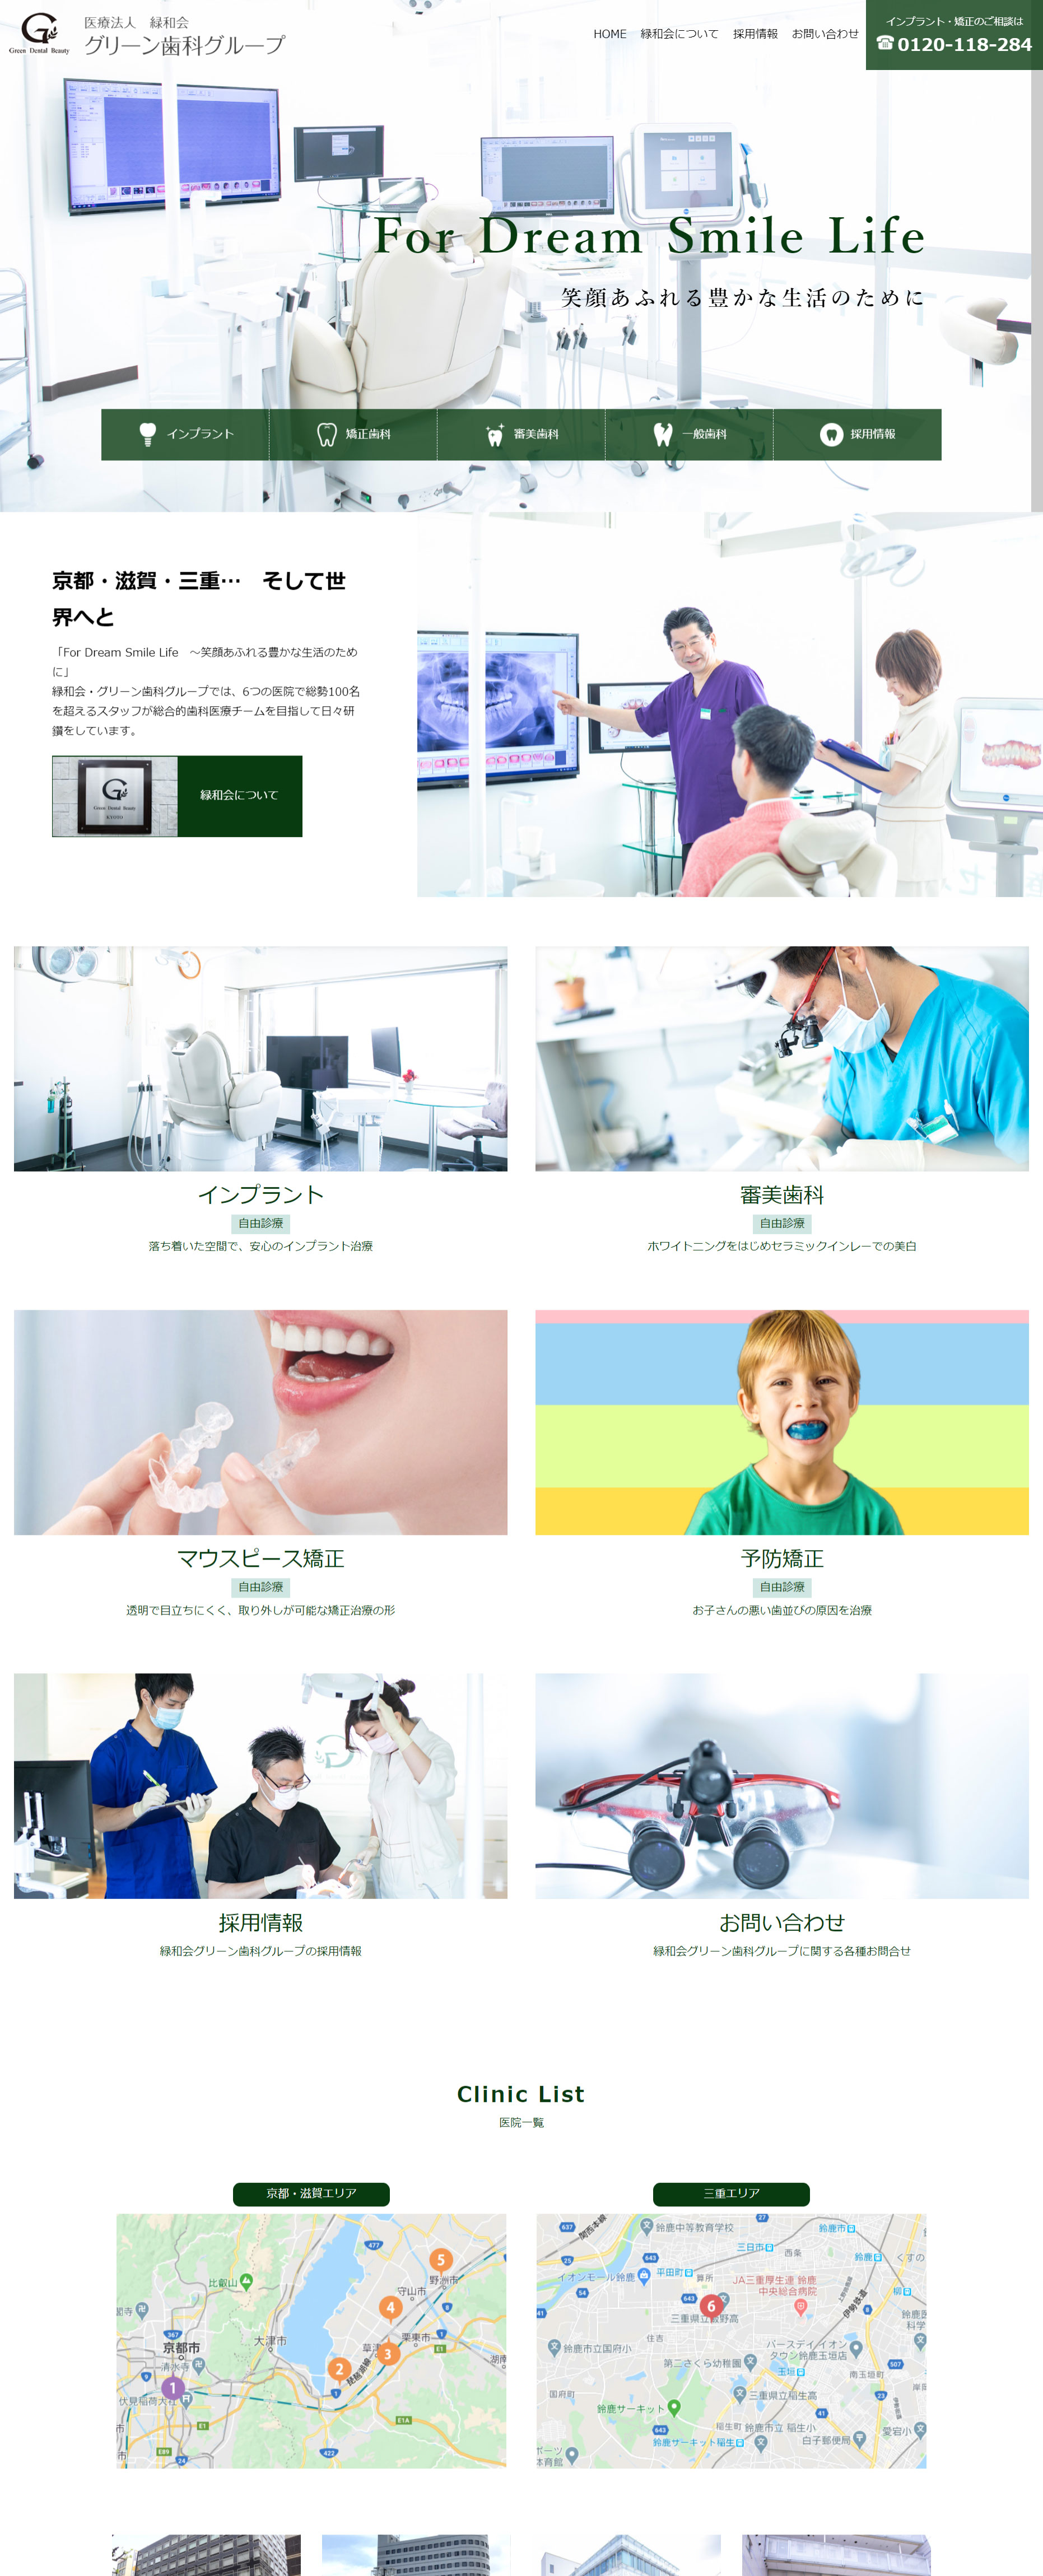 2021年4月作成「緑和会 グリーン歯科グループ」歯科医院サイト